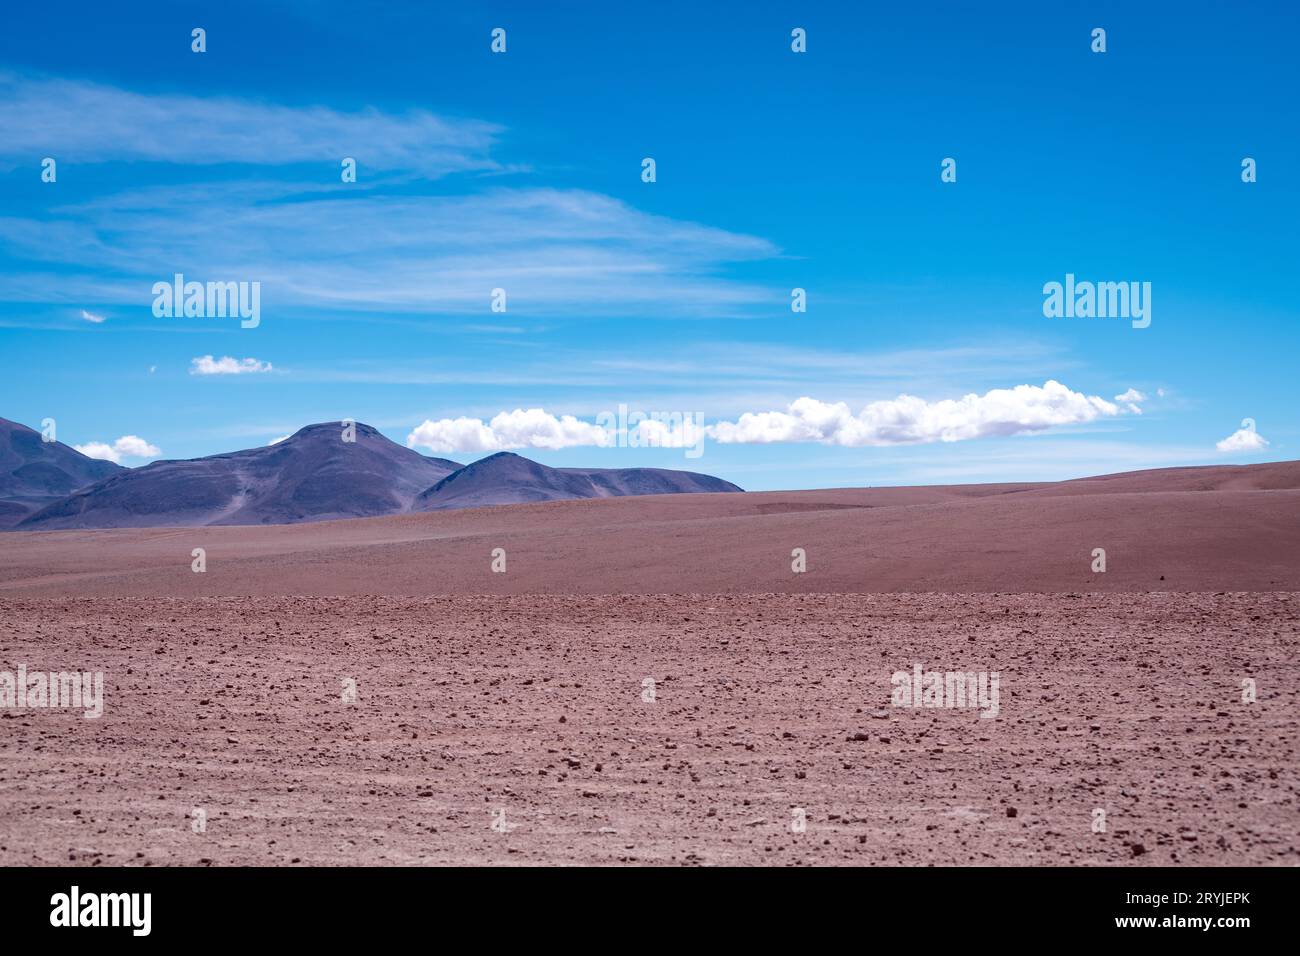 Paesaggio desertico dell'altiplano boliviano Foto Stock